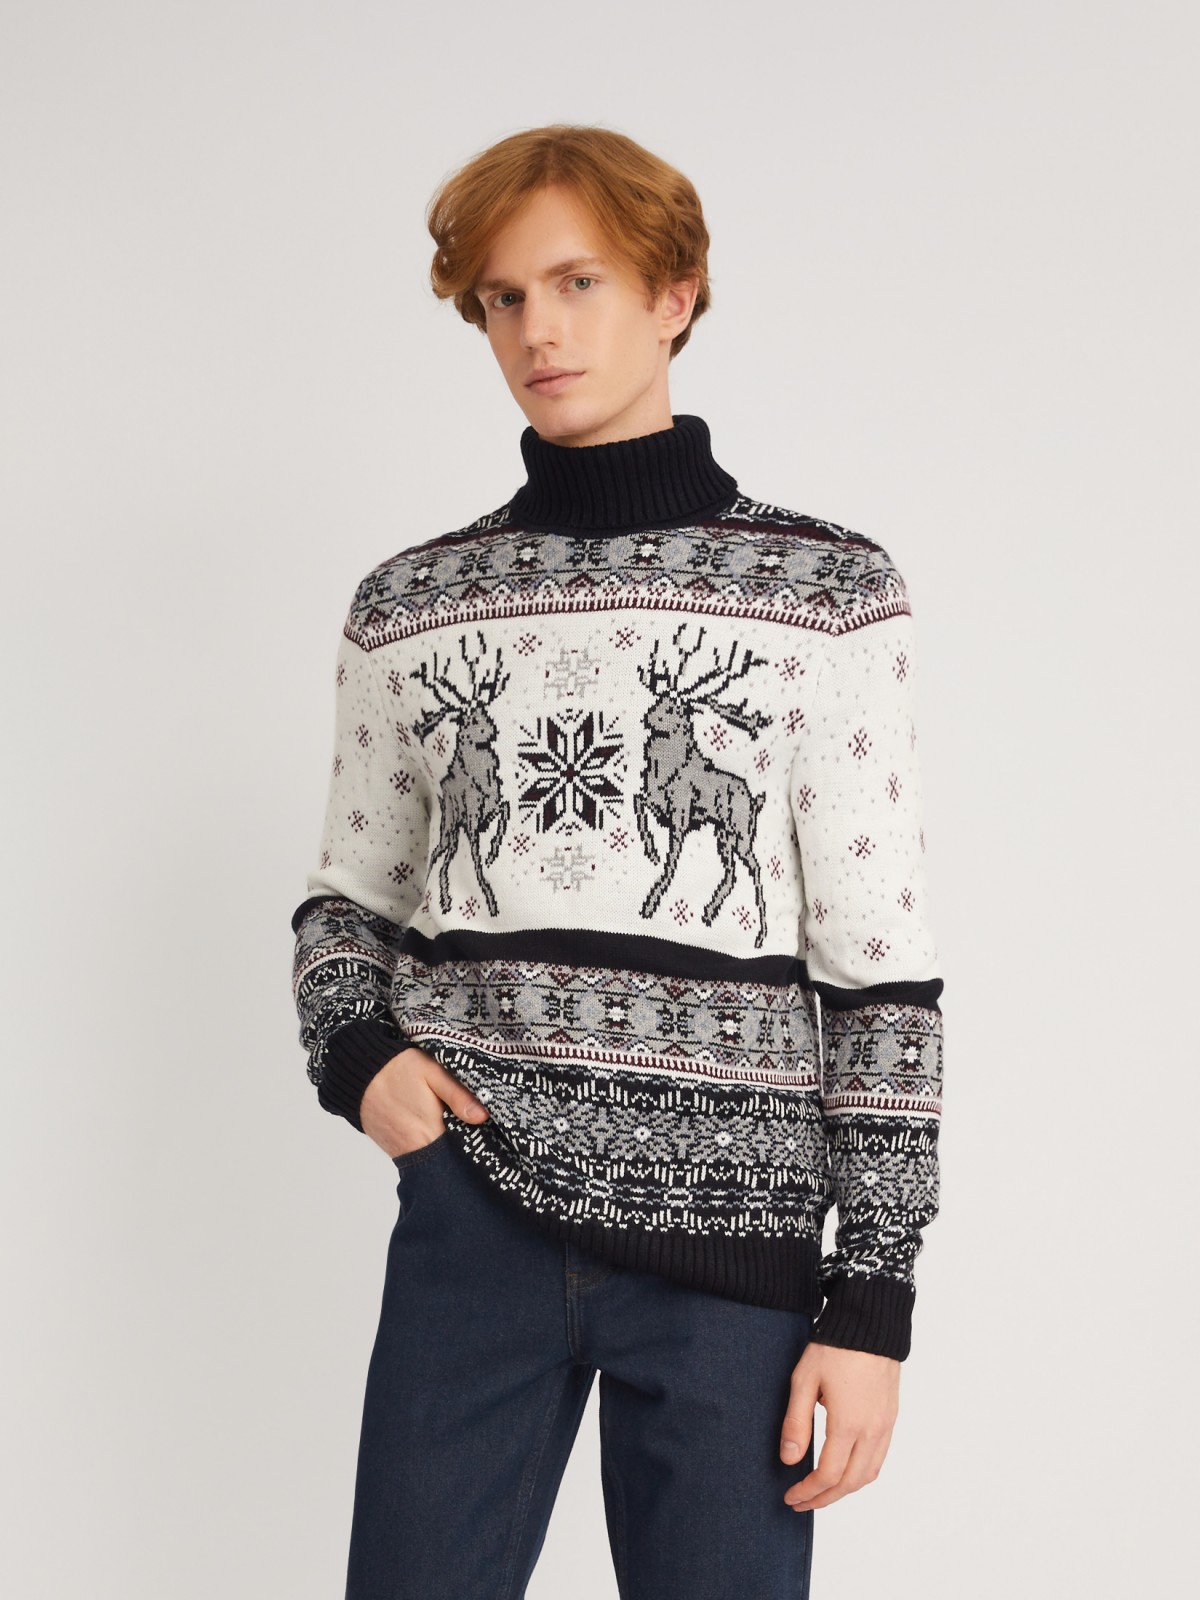 Вязаный свитер из акрила со скандинавским узором с оленями zolla 013446101083, цвет синий, размер M - фото 1